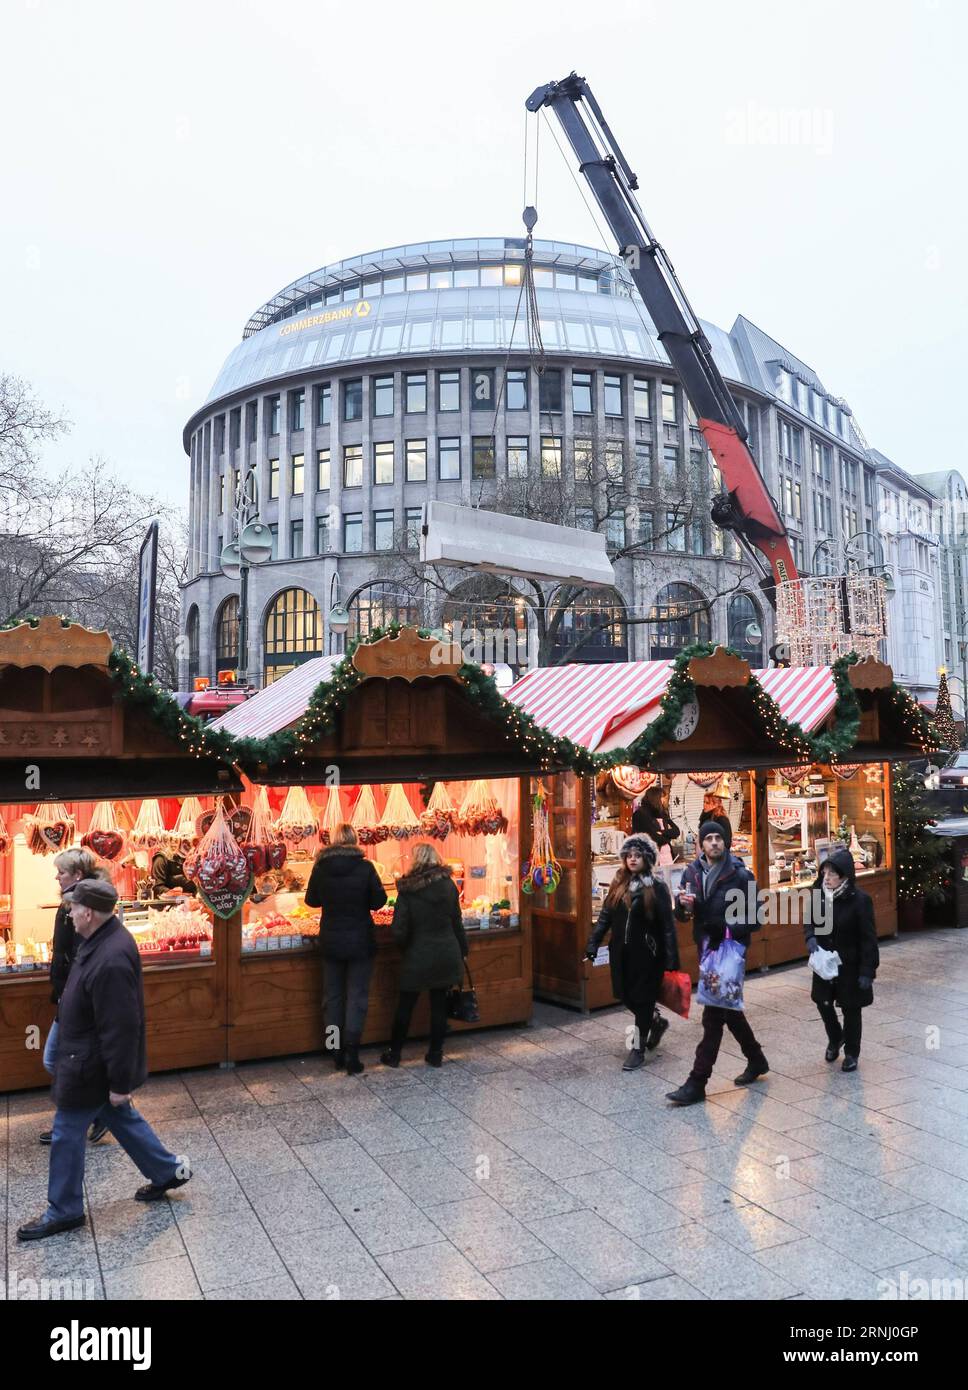 Anschlag in Berlin - Nizzasperren am Breitscheidplatz (161222) -- BERLIN, 22. Dezember 2016 -- Eine Zementbarriere wird von der Polizei um den wiedereröffneten Weihnachtsmarkt am Breitscheid-Platz in Berlin, Hauptstadt, am 22. Dezember 2016 gelegt. Der Weihnachtsmarkt hier wurde am Montag angegriffen und am Donnerstag wieder eröffnet. ) (gl) DEUTSCHLAND-BERLIN-ANGEGRIFFENER WEIHNACHTSMARKT-WIEDERERÖFFNUNG ShanxYuqi PUBLICATIONxNOTxINxCHN Halt in Berlin bei Verwaltungen Berlin DEZ 22 2016 eine Zementbarriere WIRD von der Polizei AM 22. DEZ 2016 um den wiedereröffneten Weihnachtsmarkt AM Breitscheid-Platz in der Berliner Hauptstadt platziert Stockfoto